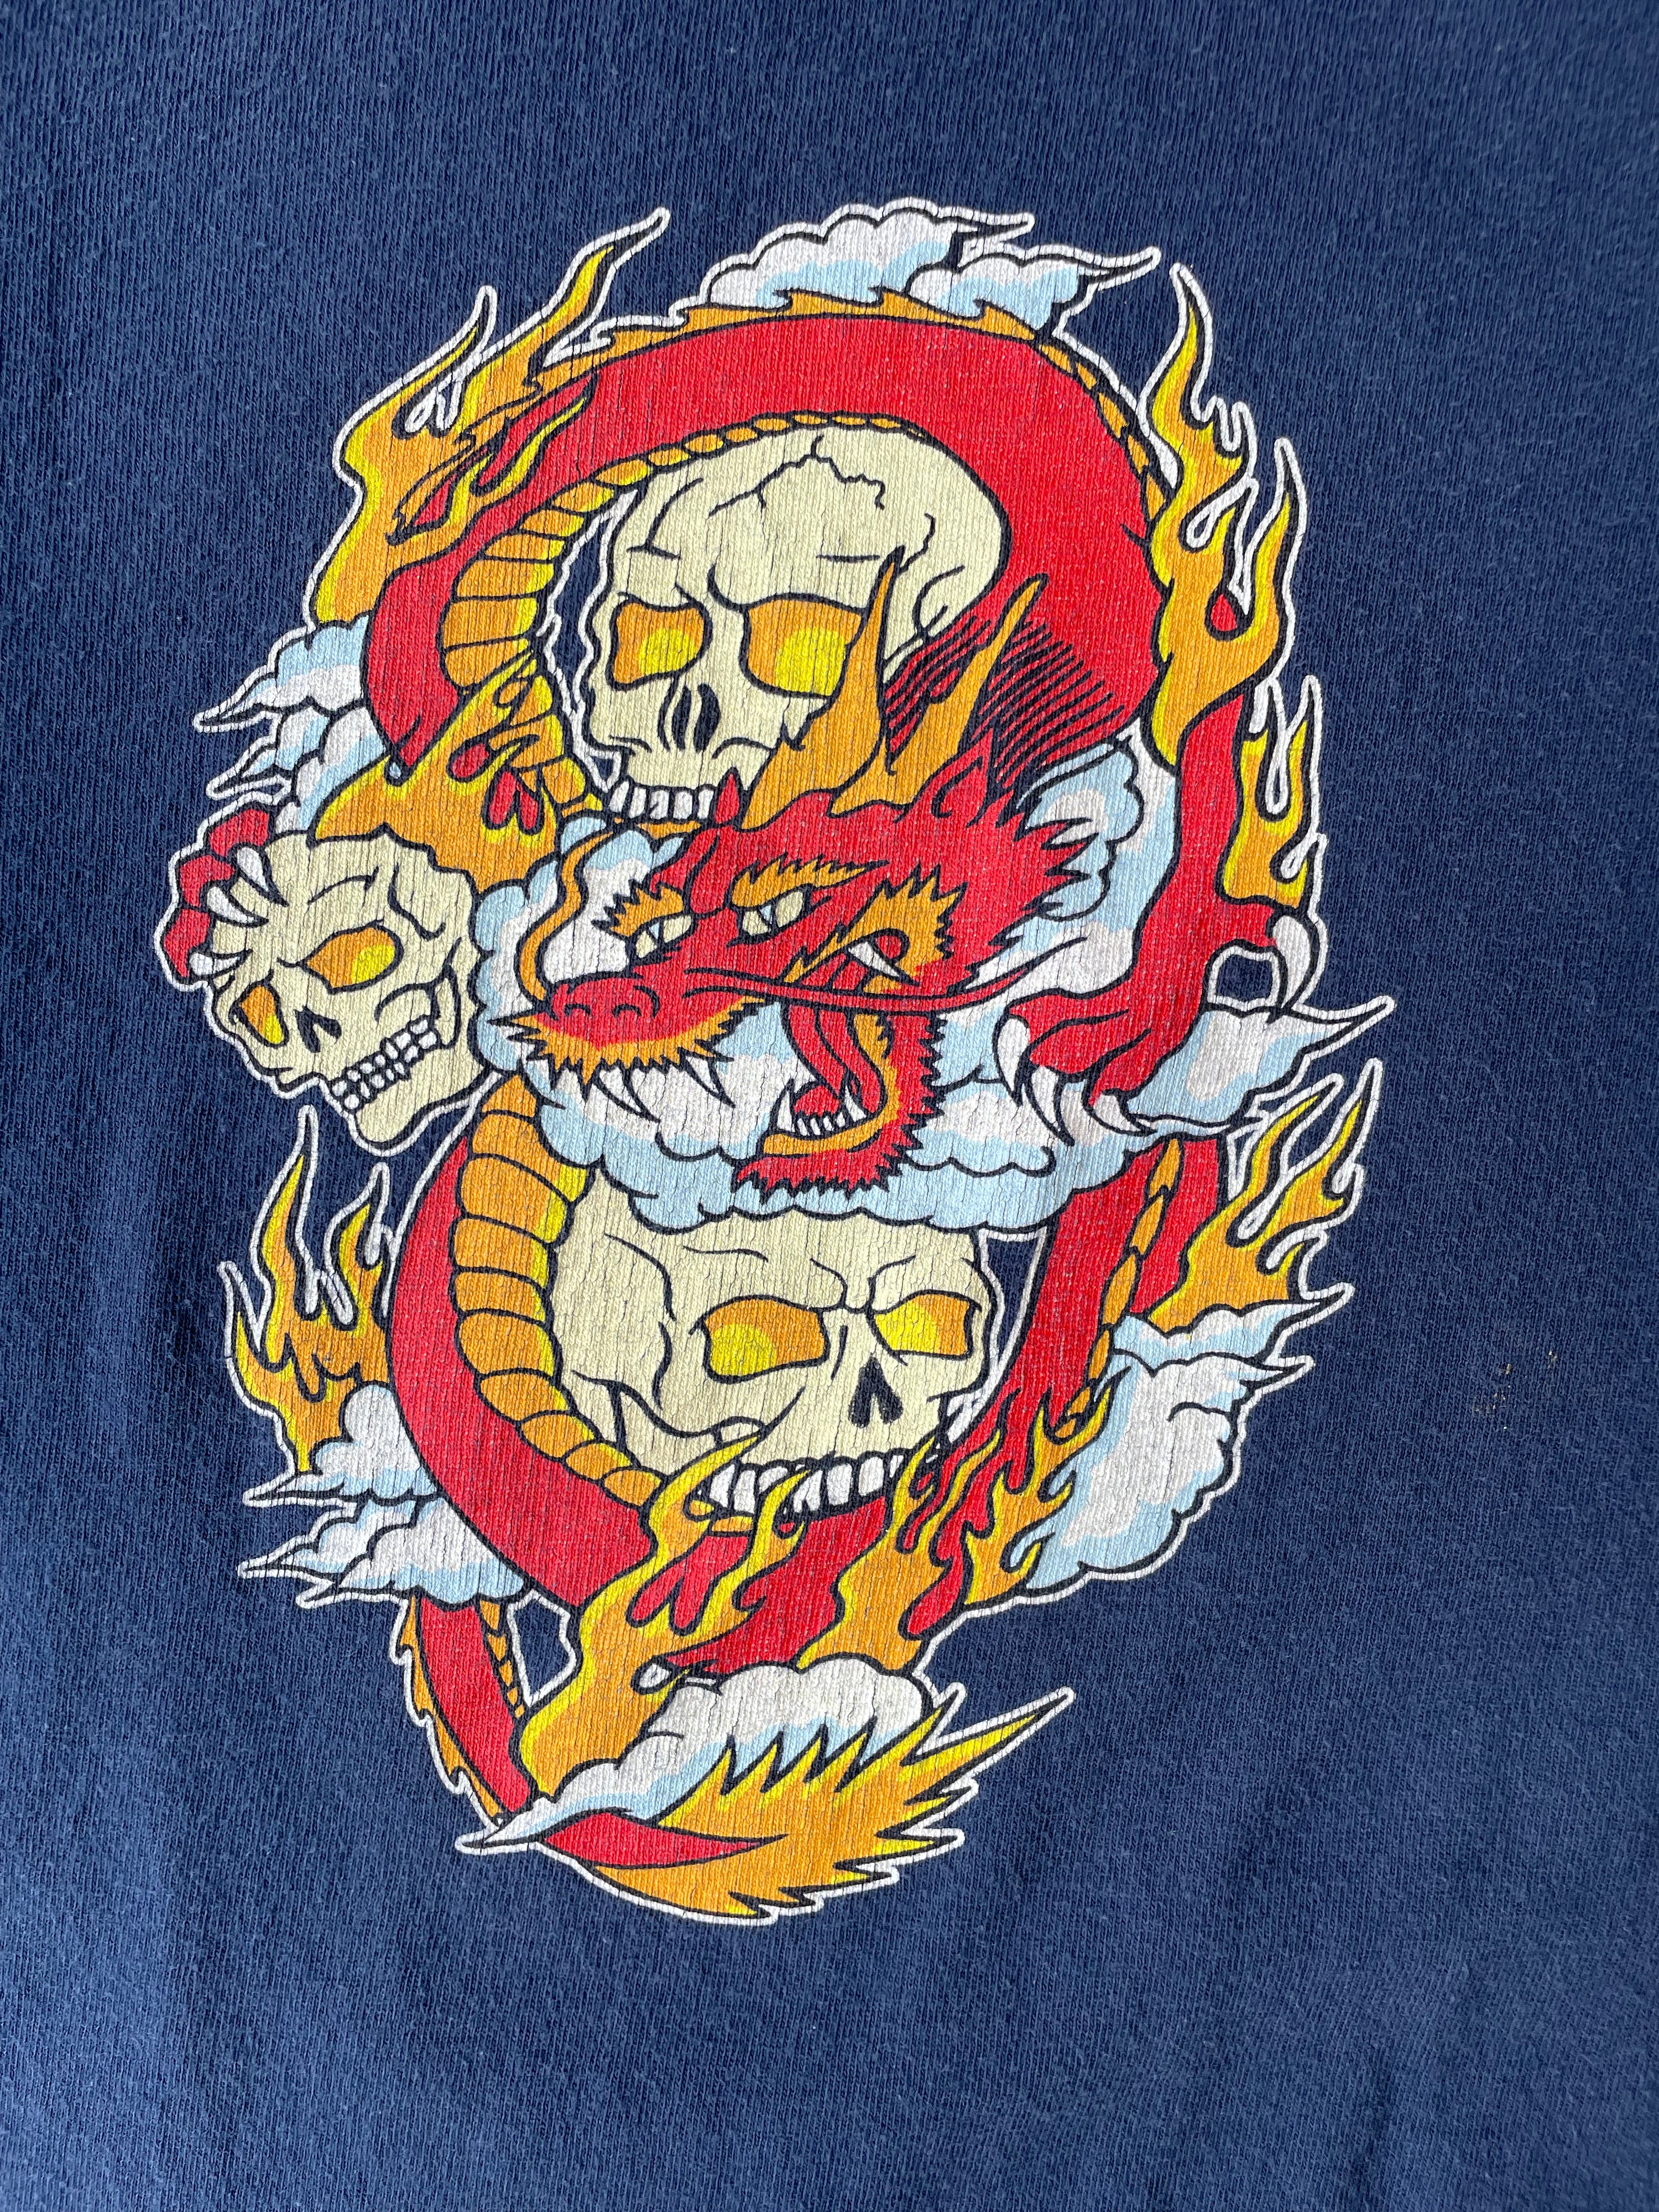 90s Skull Long Sleeve T-Shirt - Large